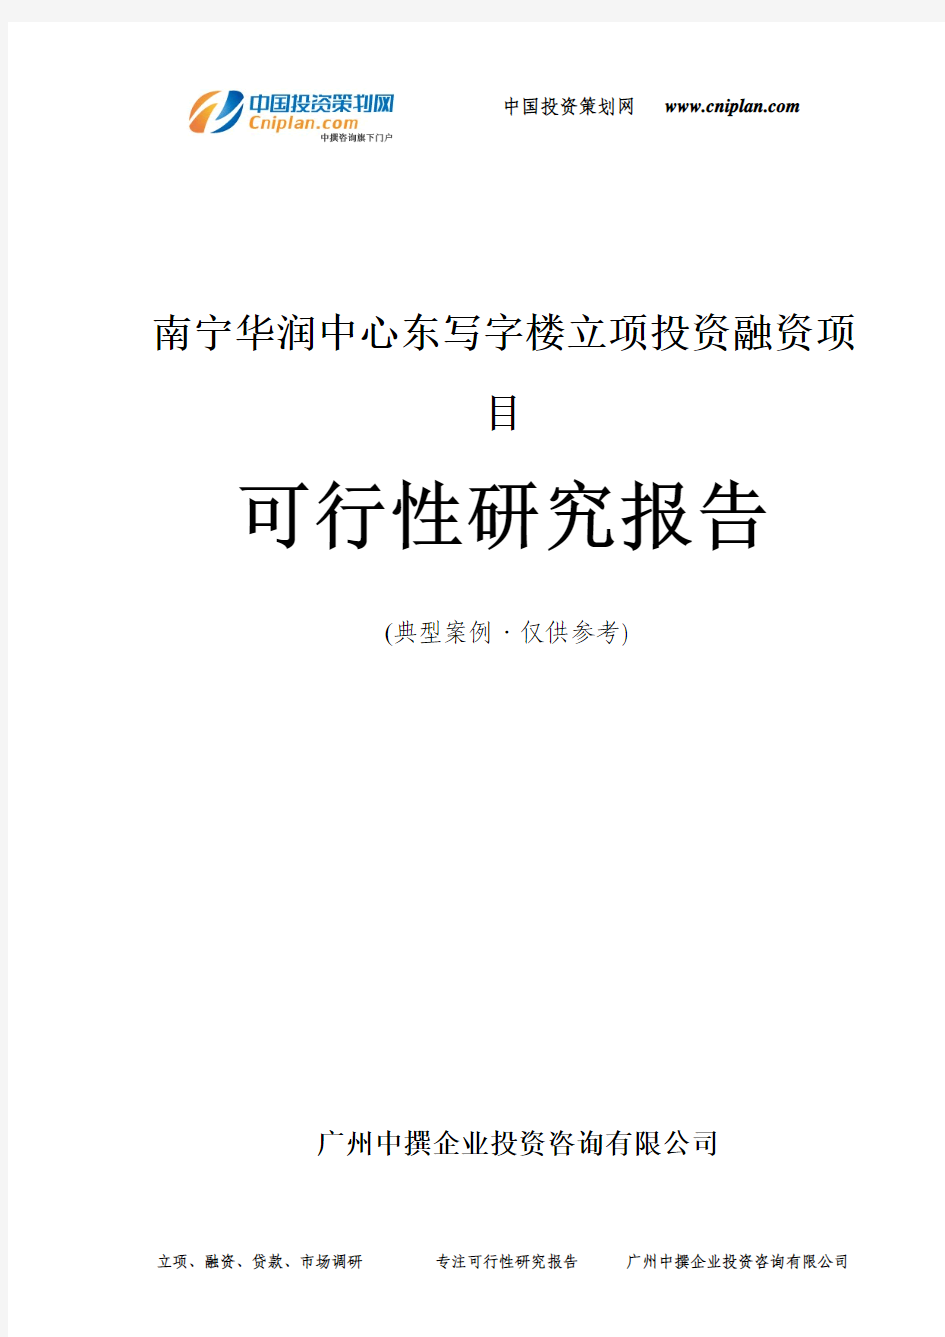 南宁华润中心东写字楼融资投资立项项目可行性研究报告(中撰咨询)